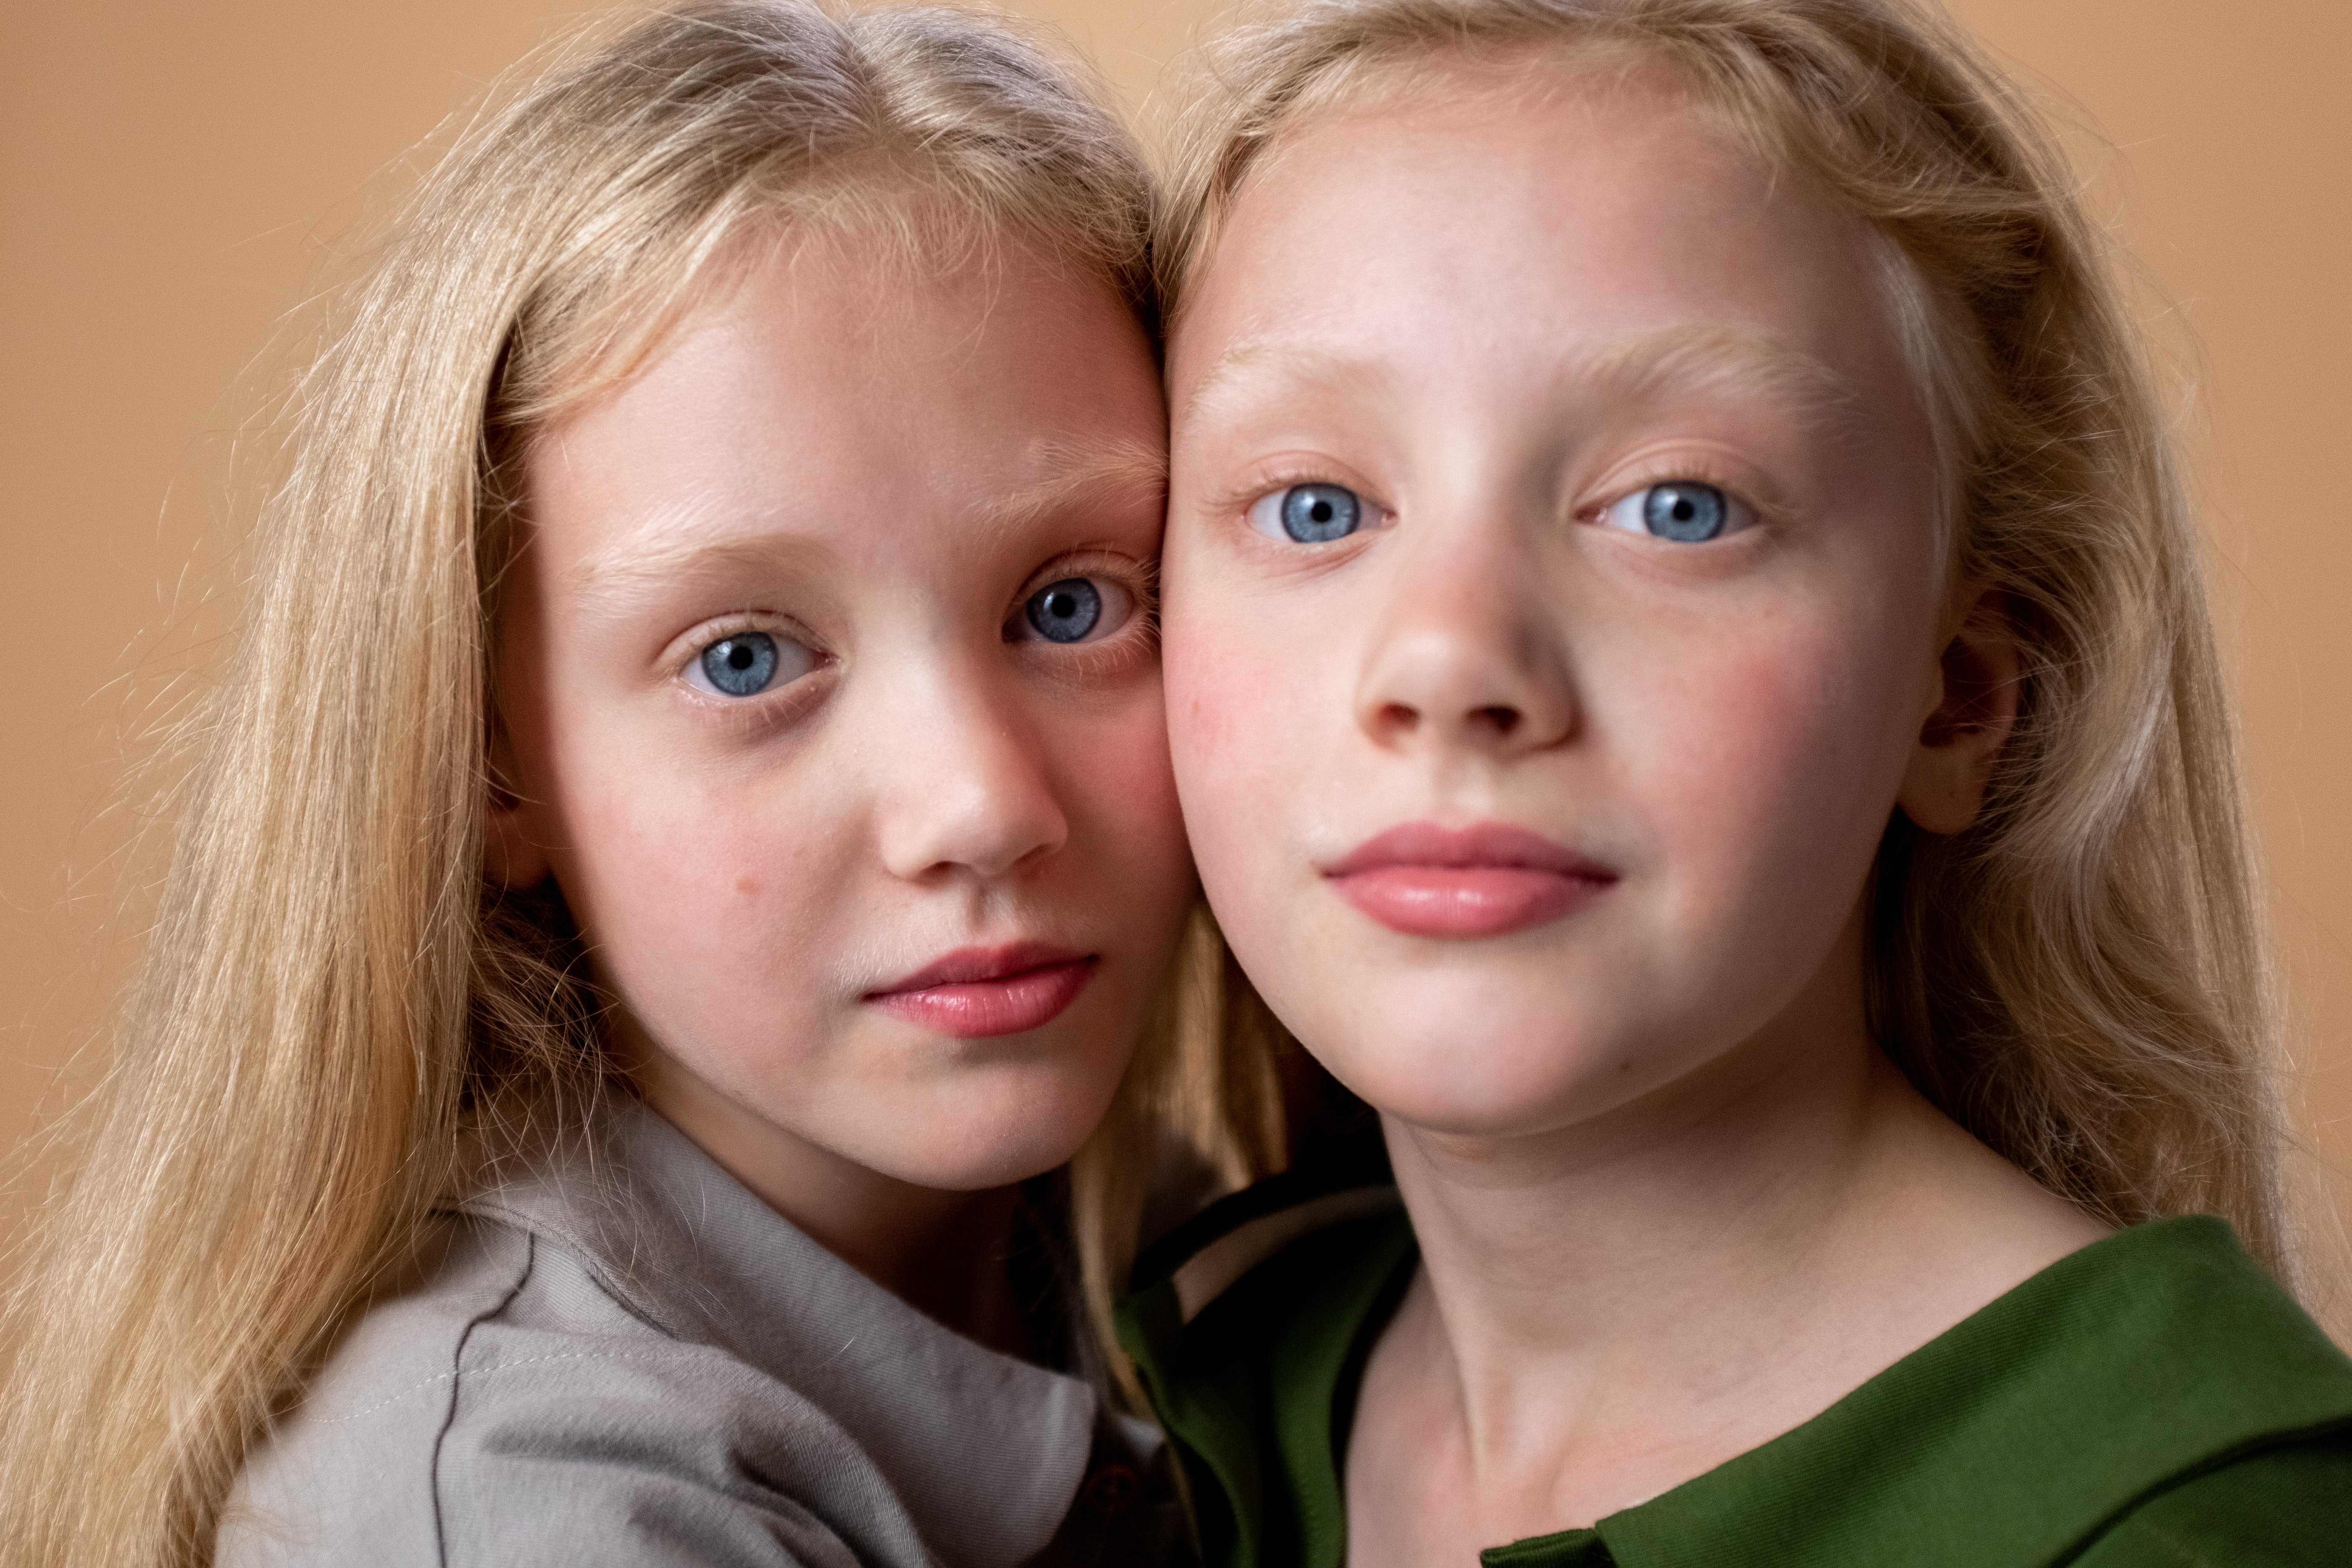 Rosie und Julie waren Zwillingsschwestern. | Quelle: Pexels